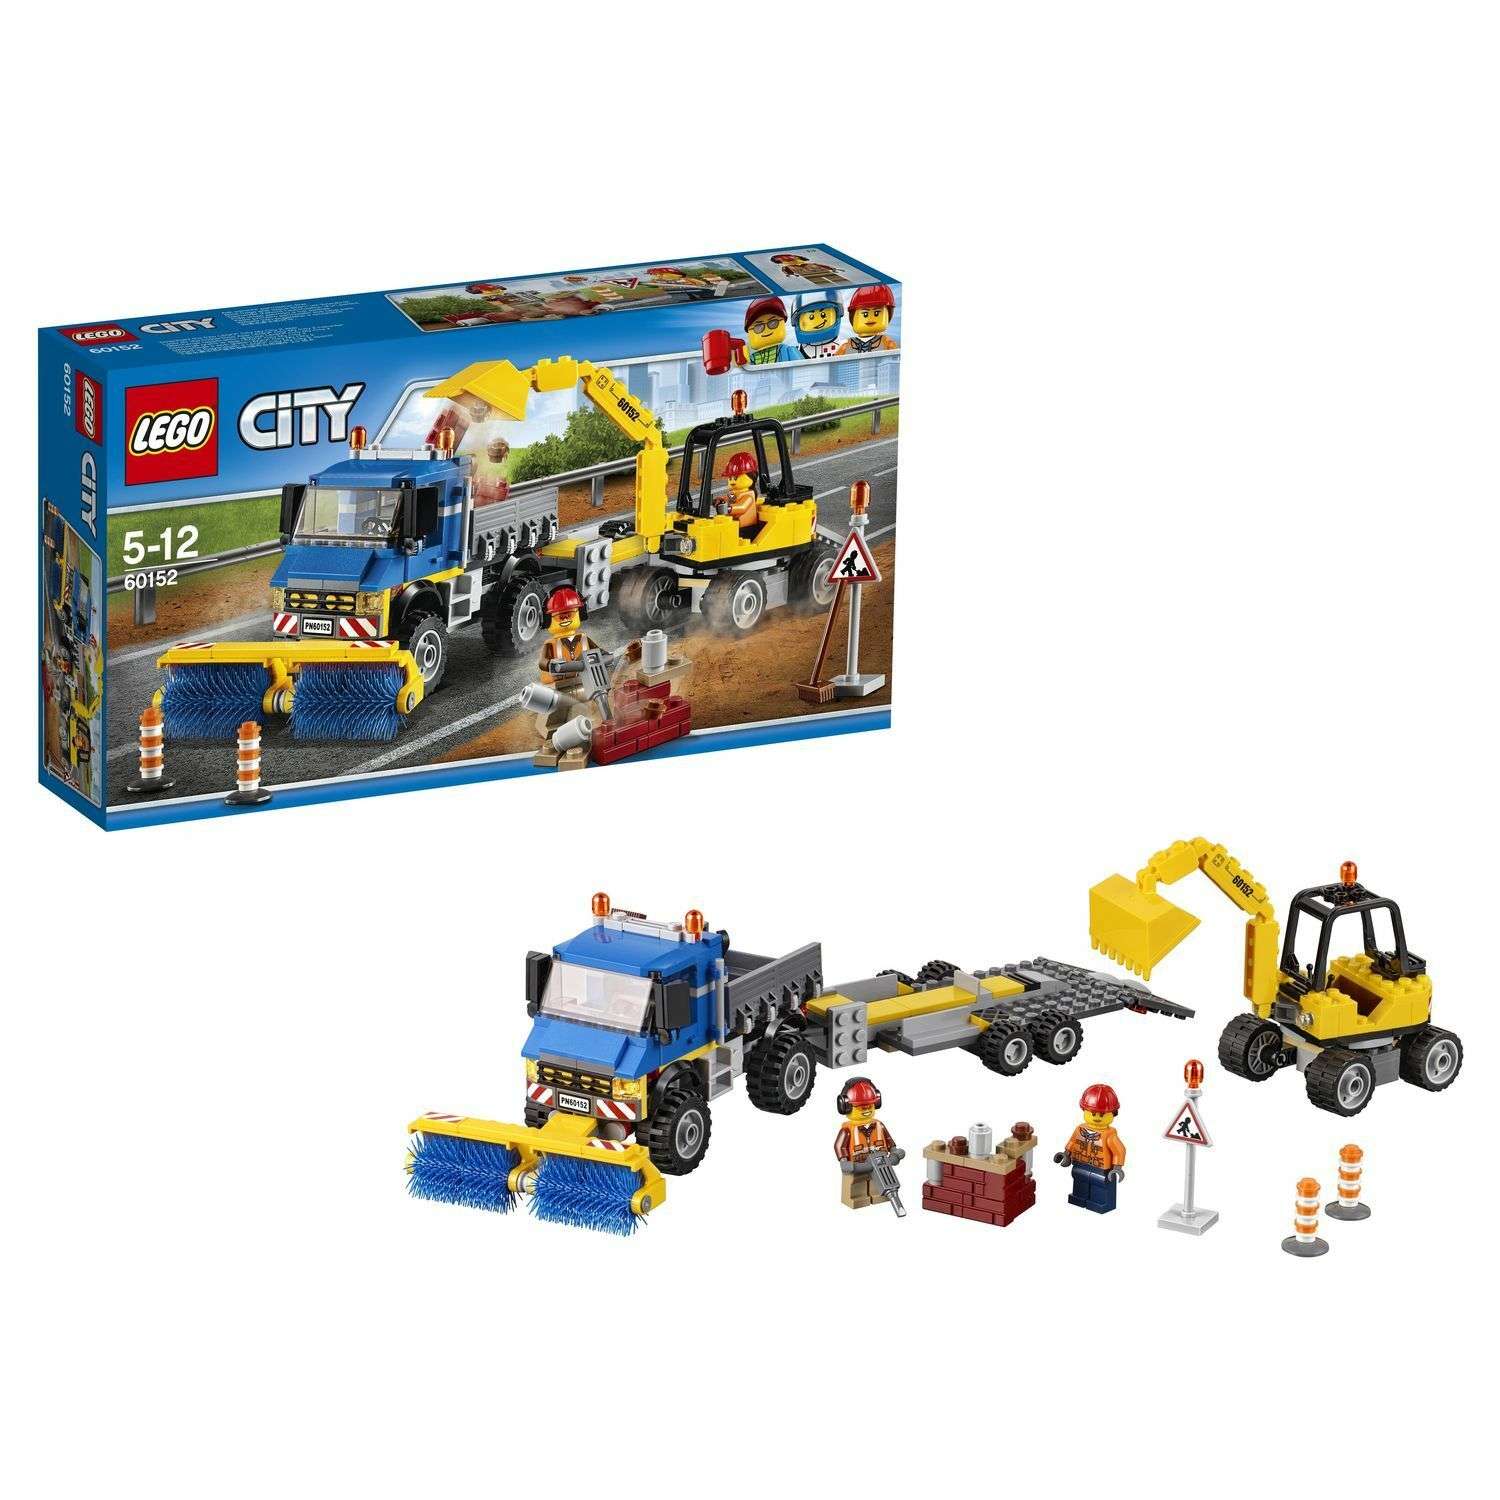 Конструктор LEGO City Great Vehicles Уборочная техника (60152) - фото 1